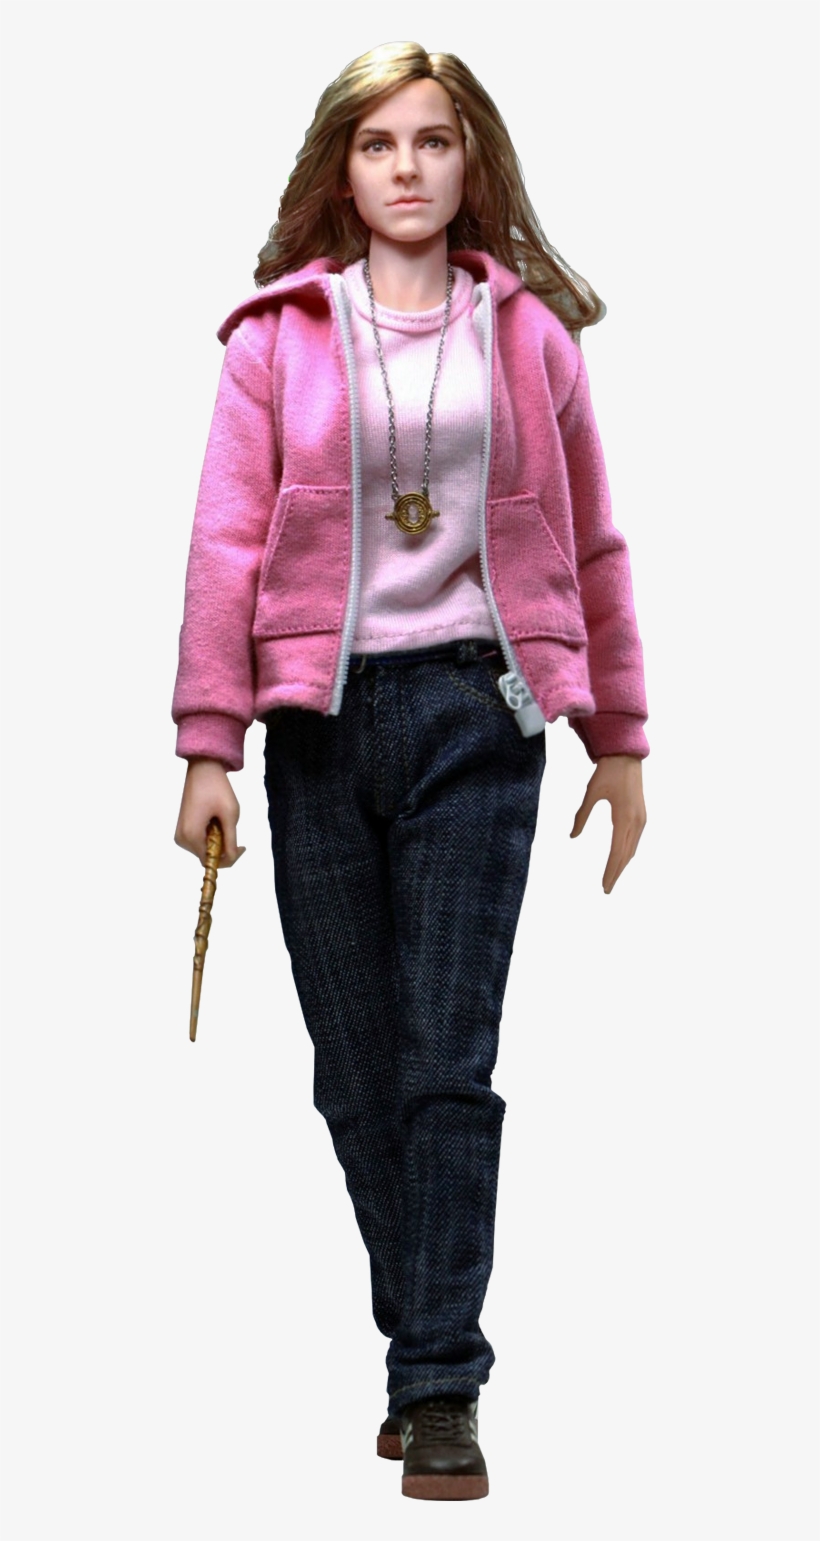 hermione granger barbie